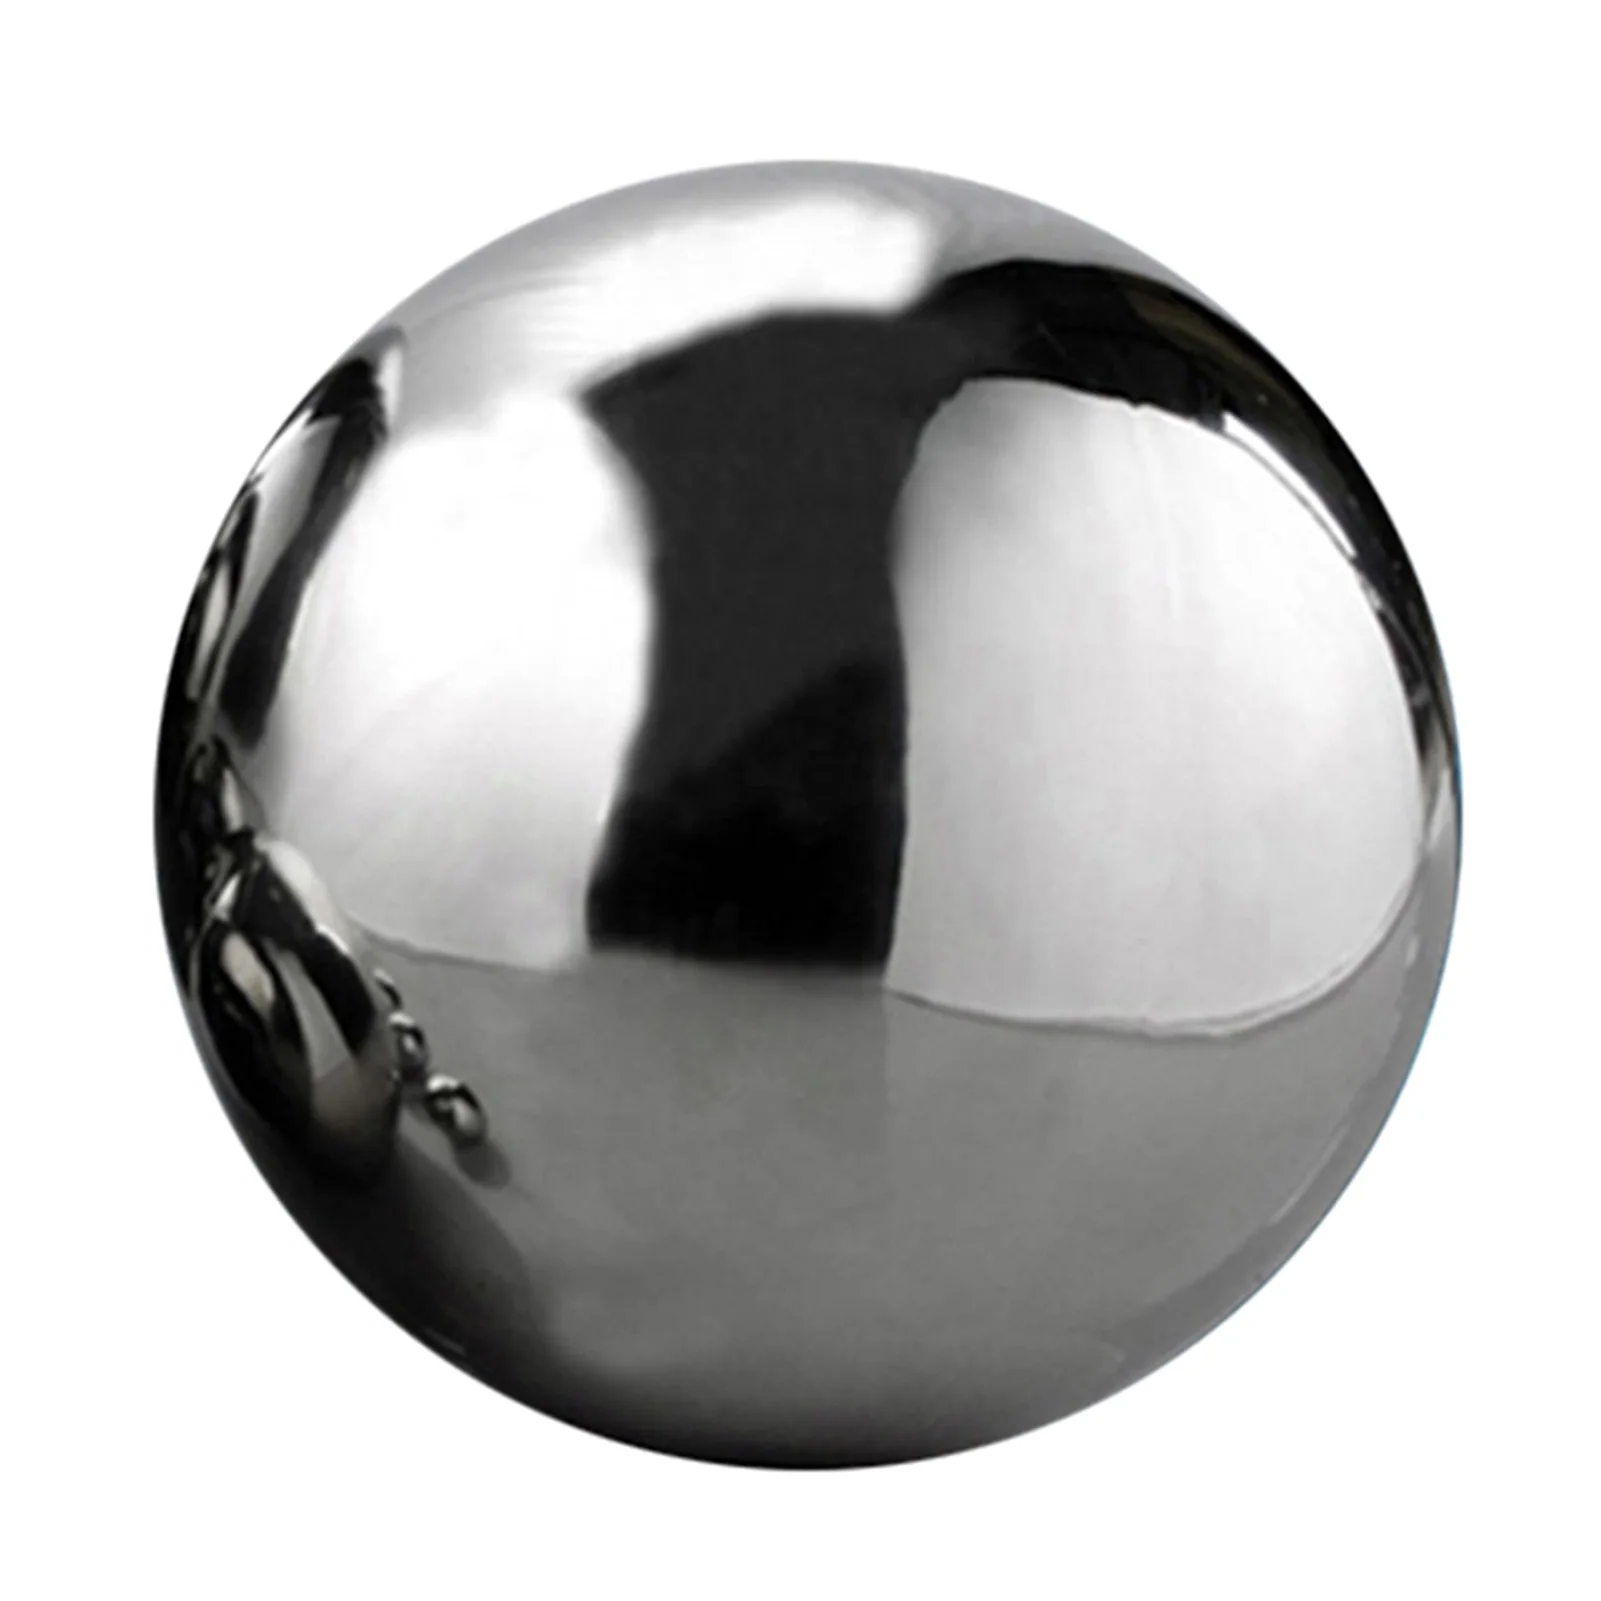 

Шар для глаз из нержавеющей стали, полый шар, зеркальный шар, самодельный декоративный плавающий шар для пруда, отражающий сад, двор, патио с...